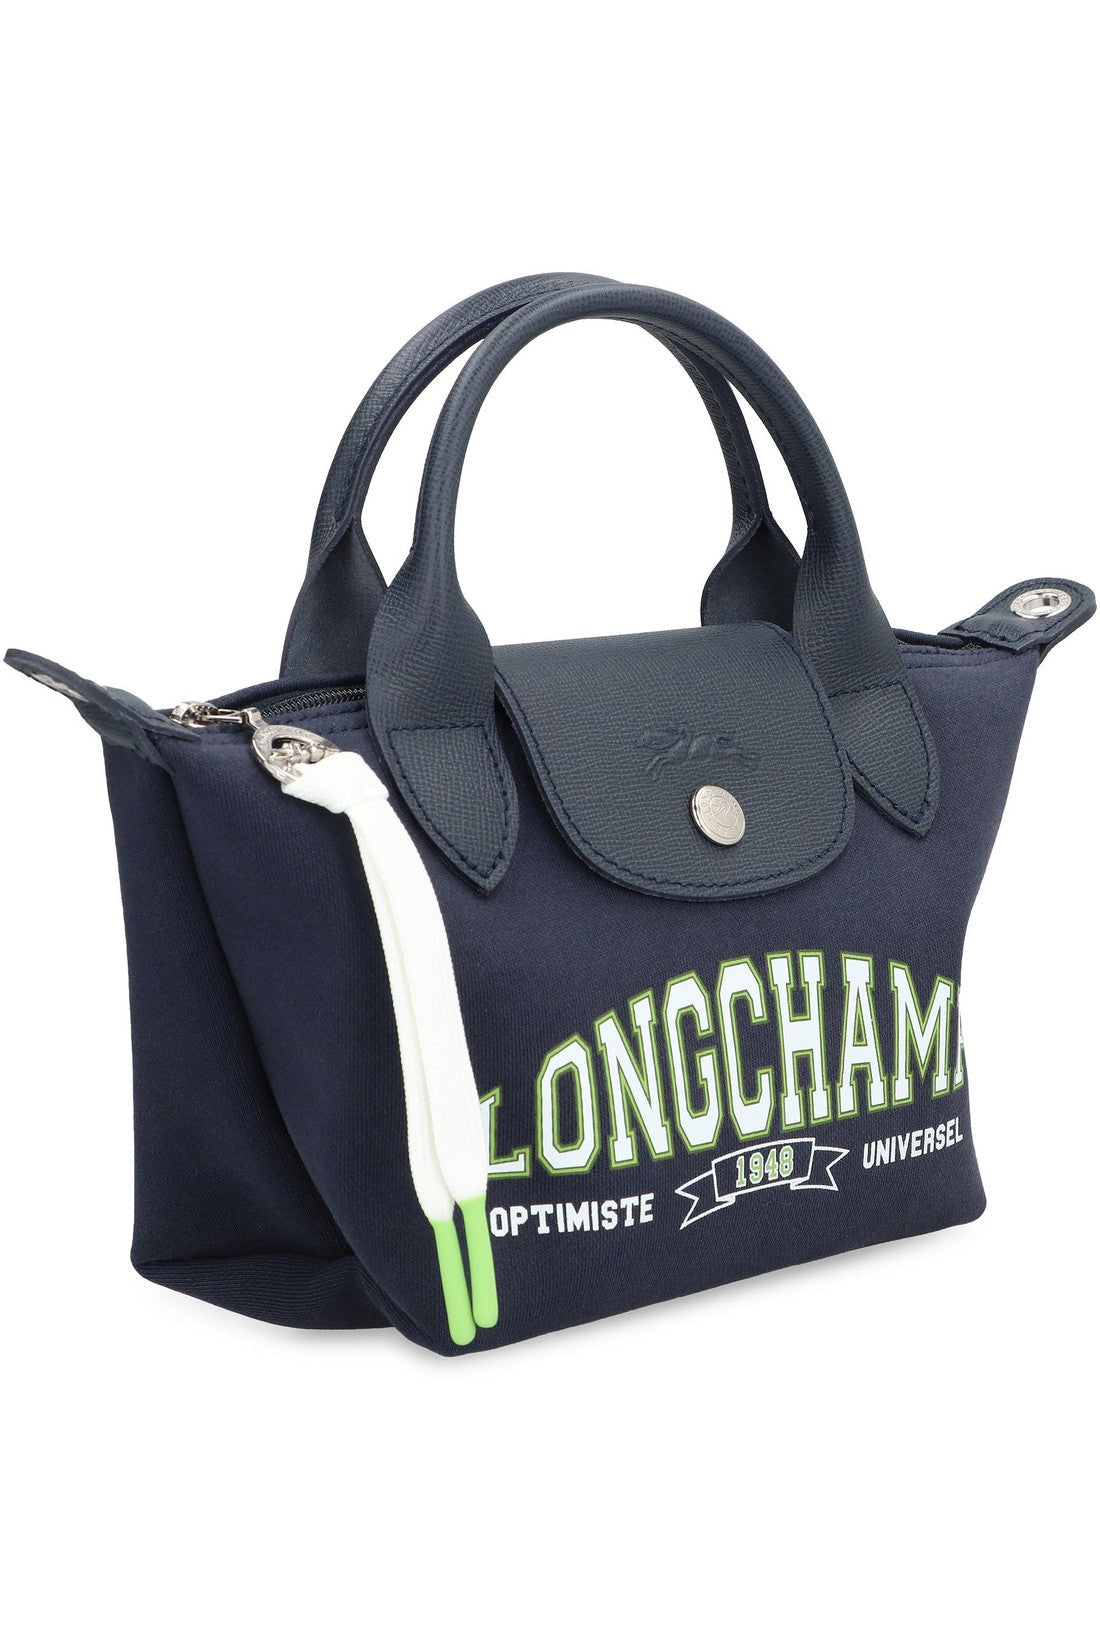 Longchamp-OUTLET-SALE-Le Pliage Collection XS bag-ARCHIVIST